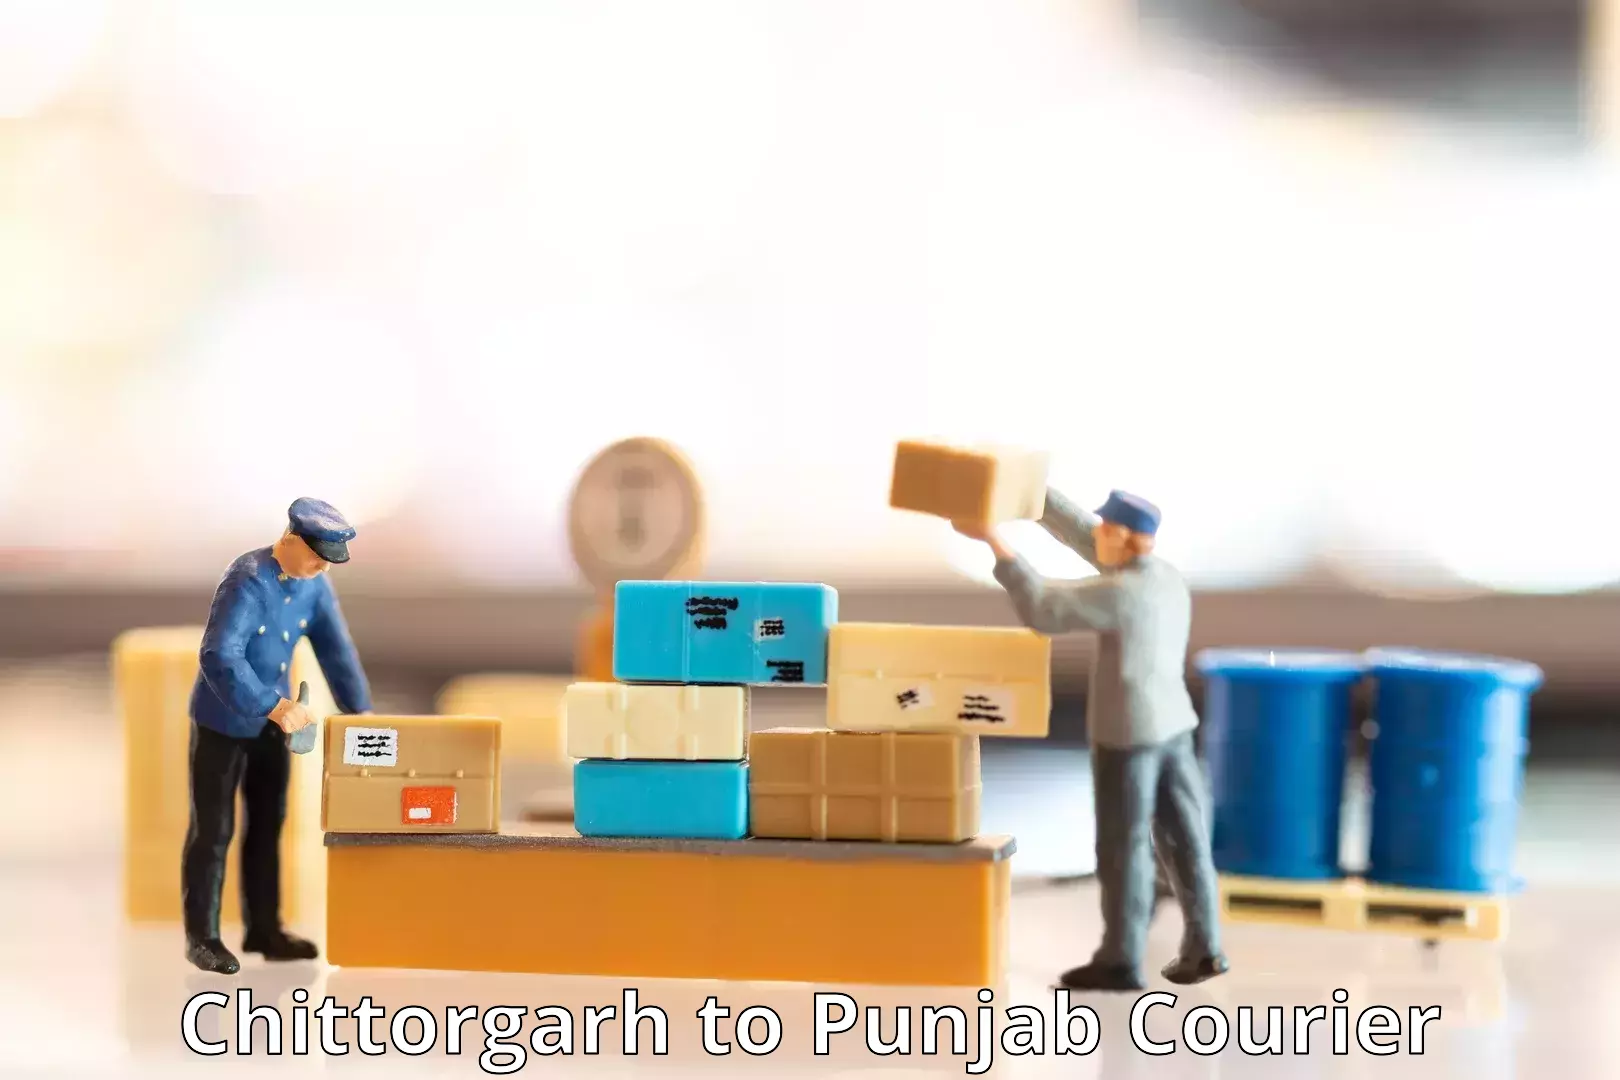 International courier networks Chittorgarh to Punjab